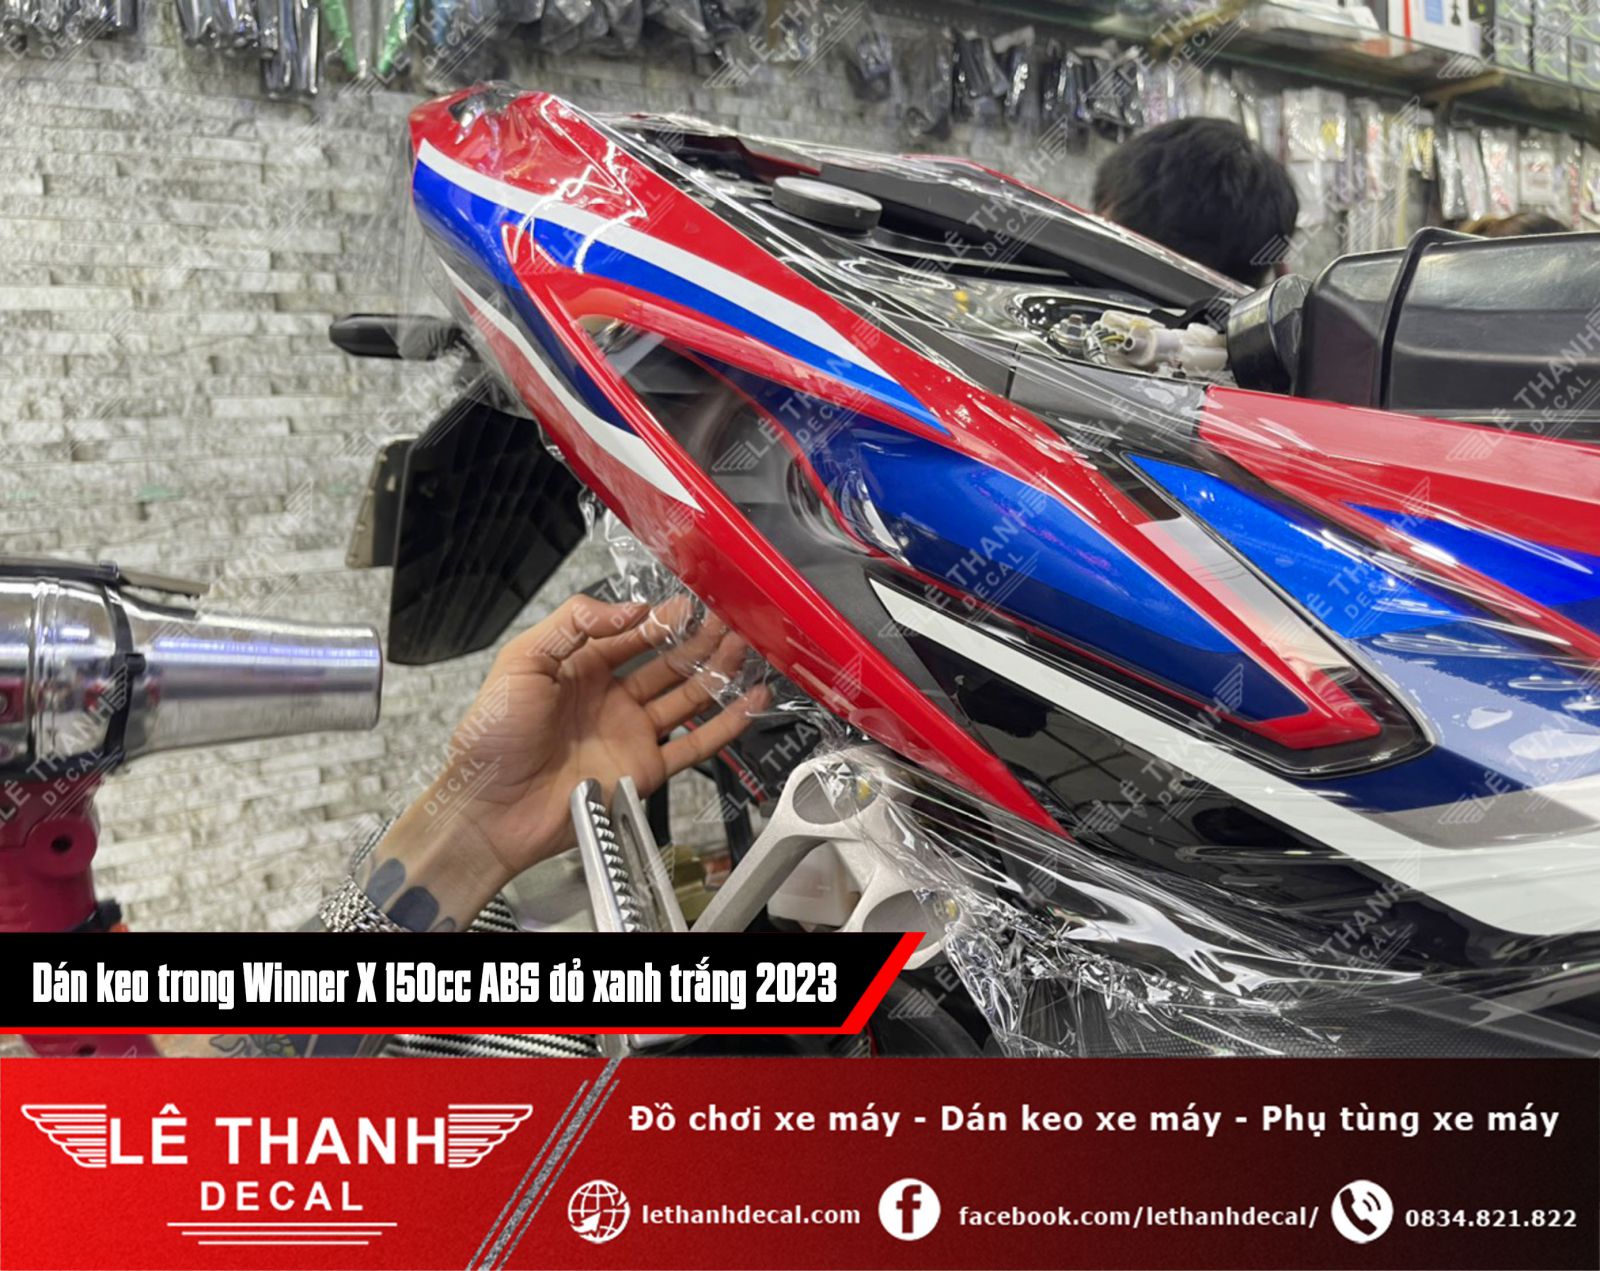 Dán keo trong cho xe Winner X 150cc ABS đỏ xanh trắng 2023